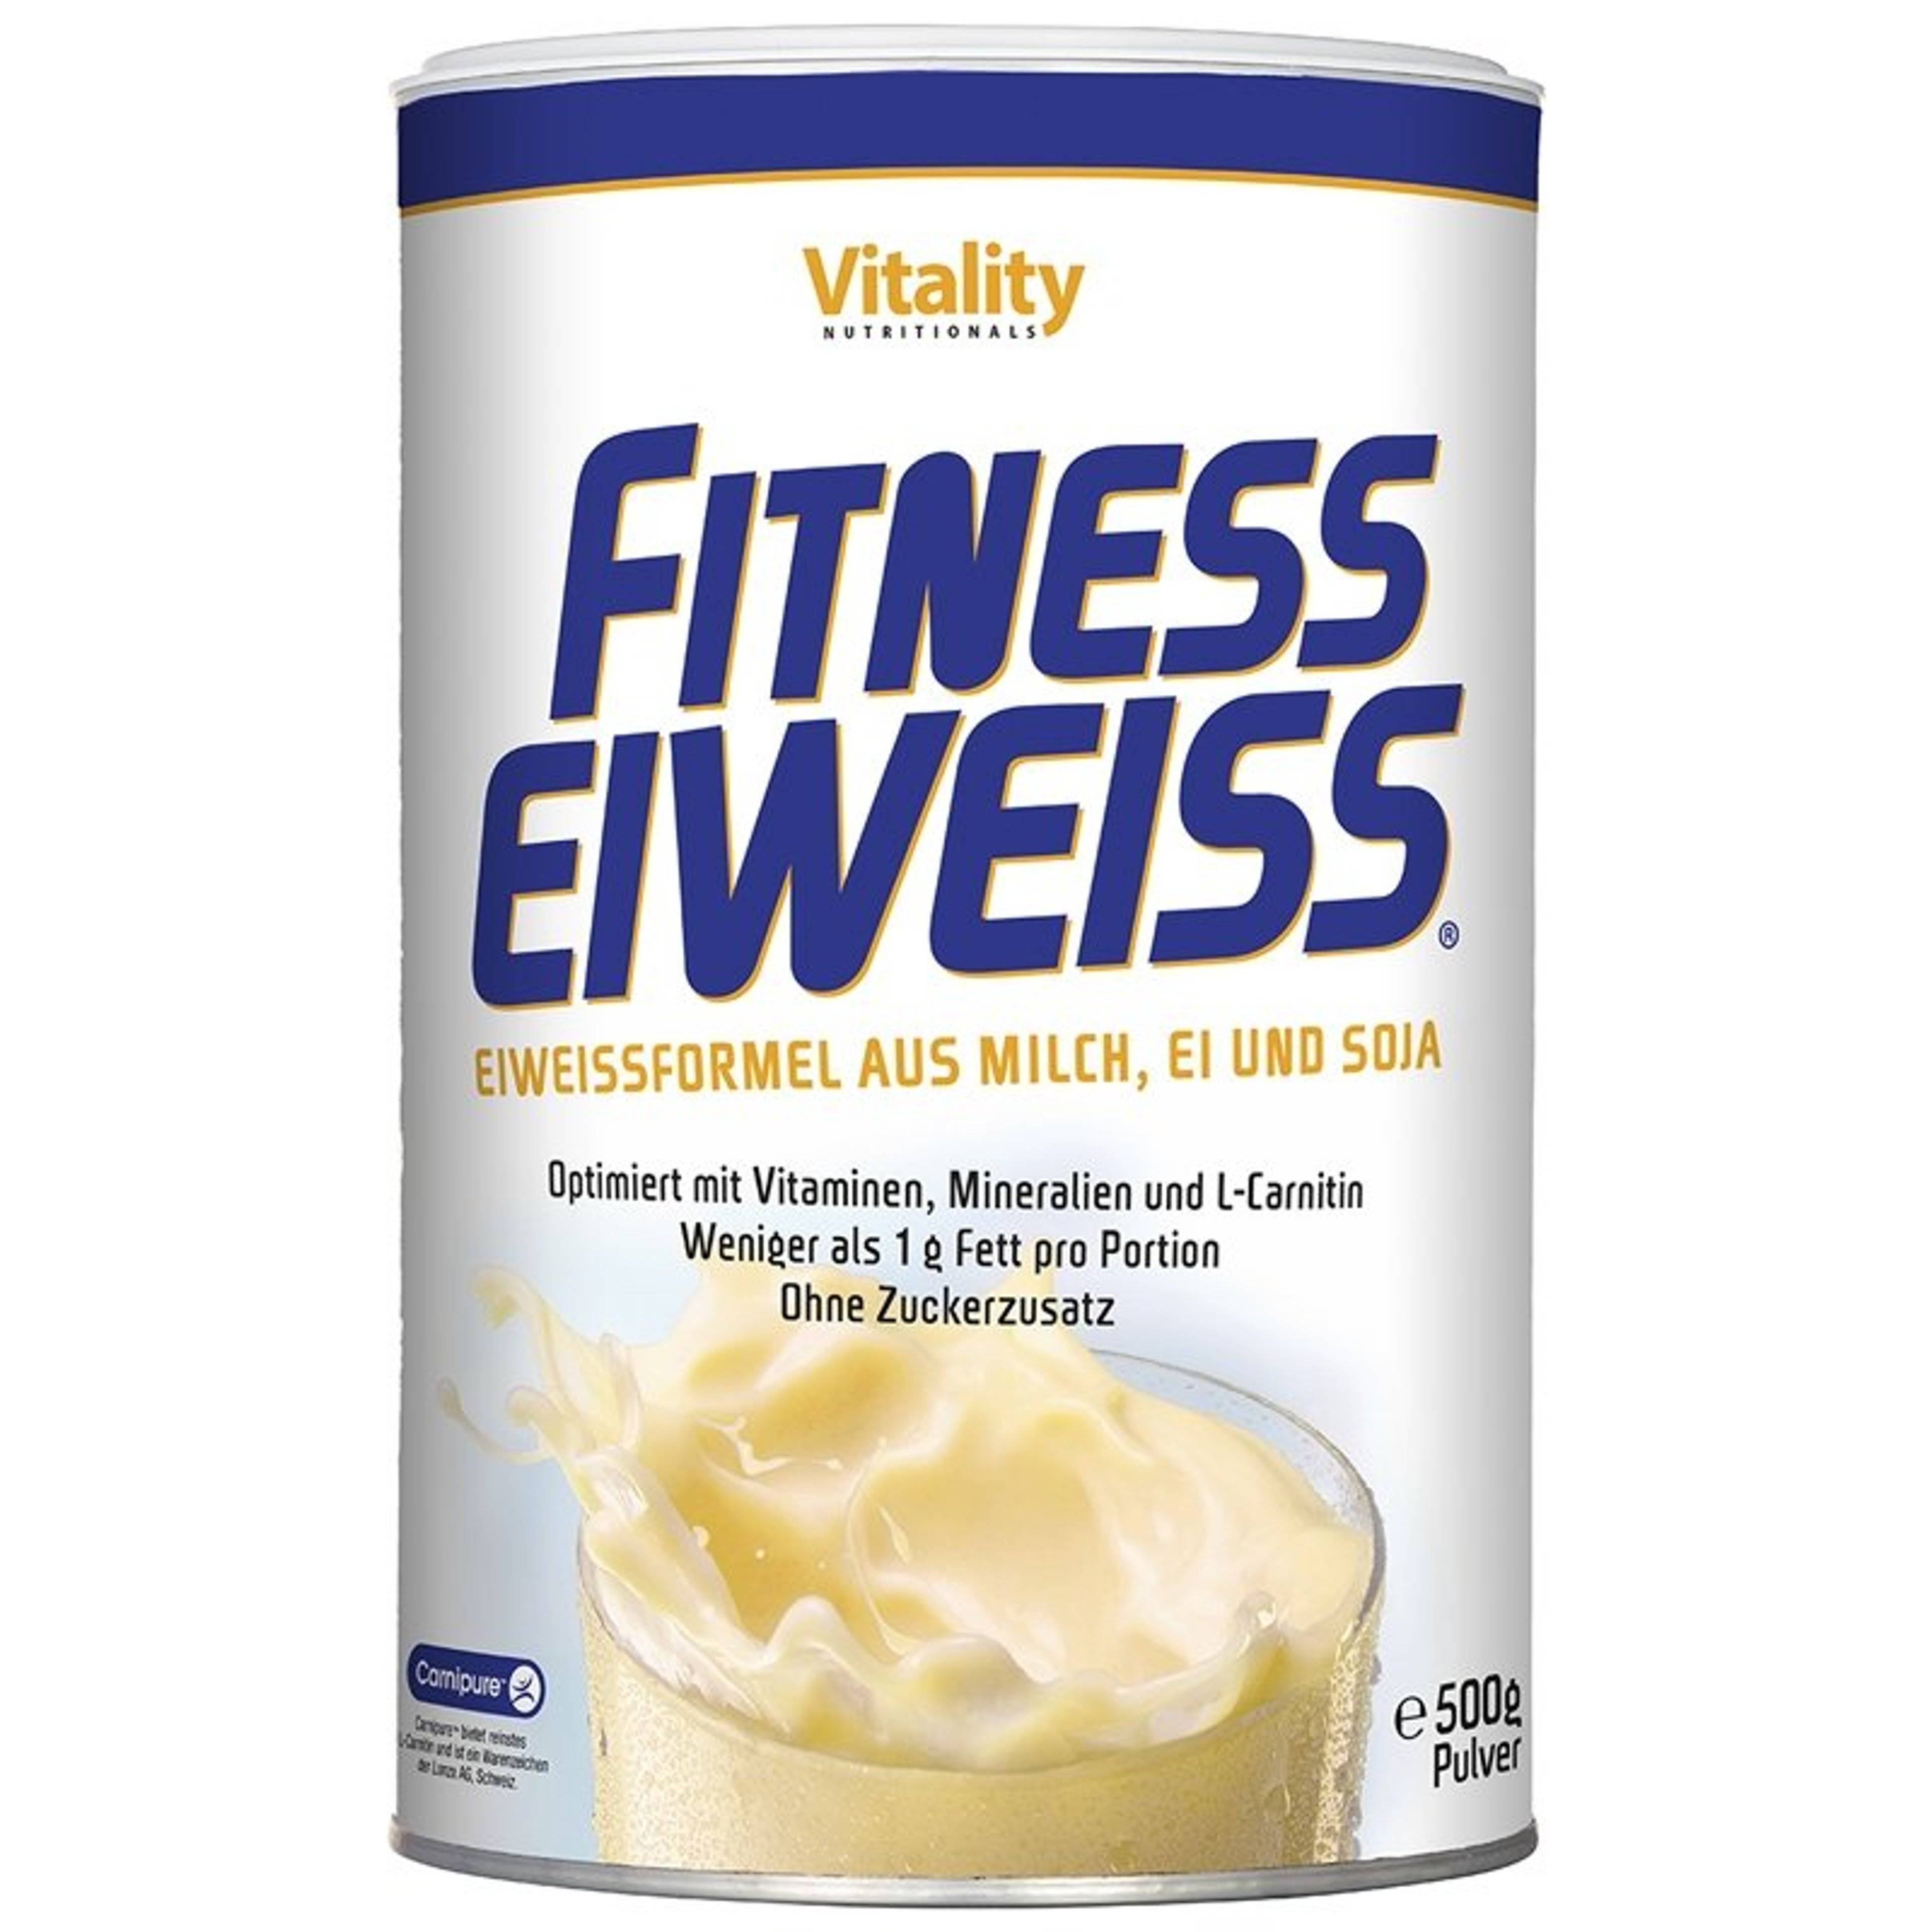 Fitness Eiweiss, Pfirsich-Mango